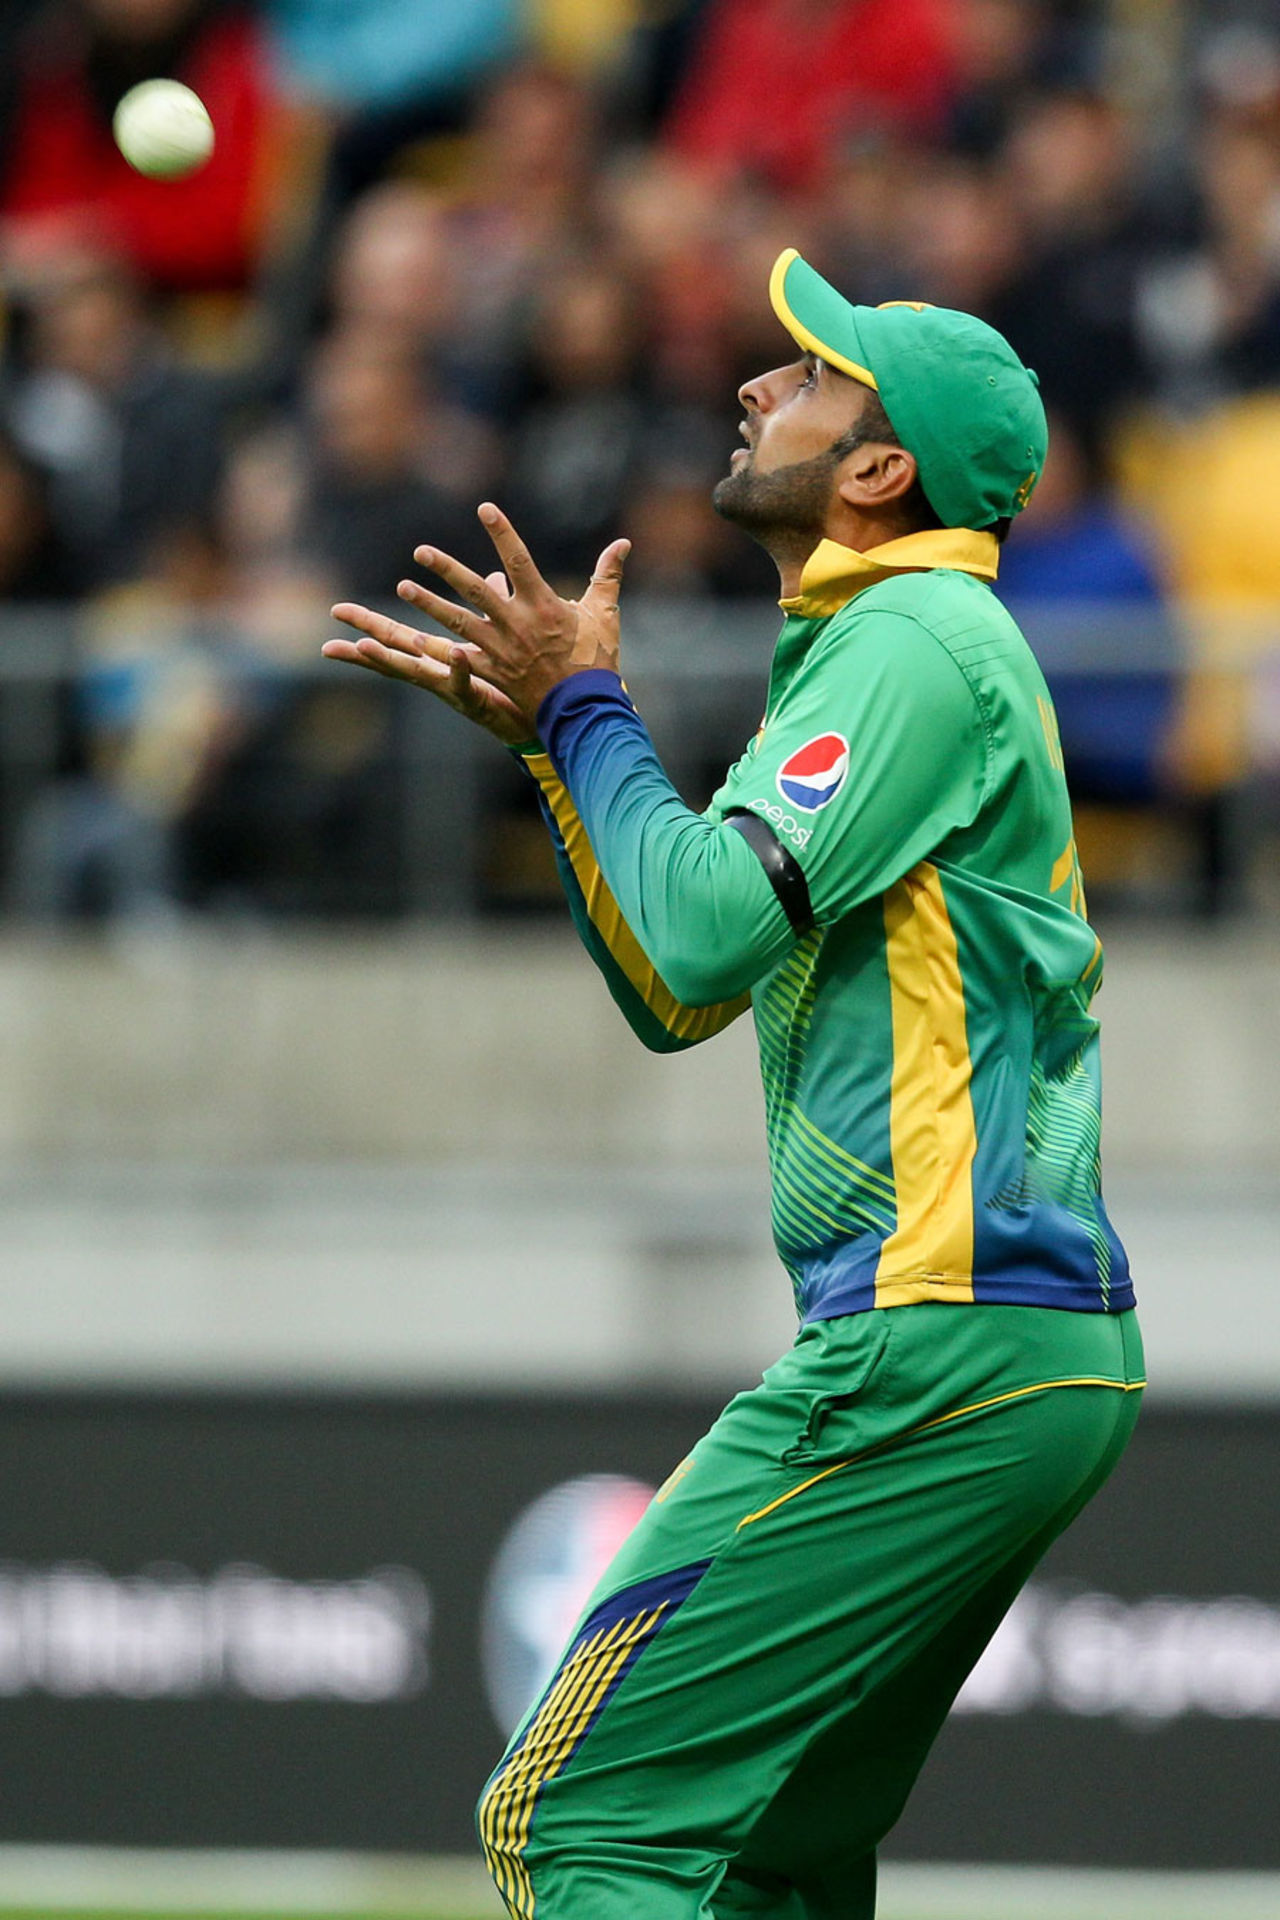 Shoaib Malik gets under a catch, New Zealand v Pakistan, 3rd T20I, Wellington, January 22, 2016